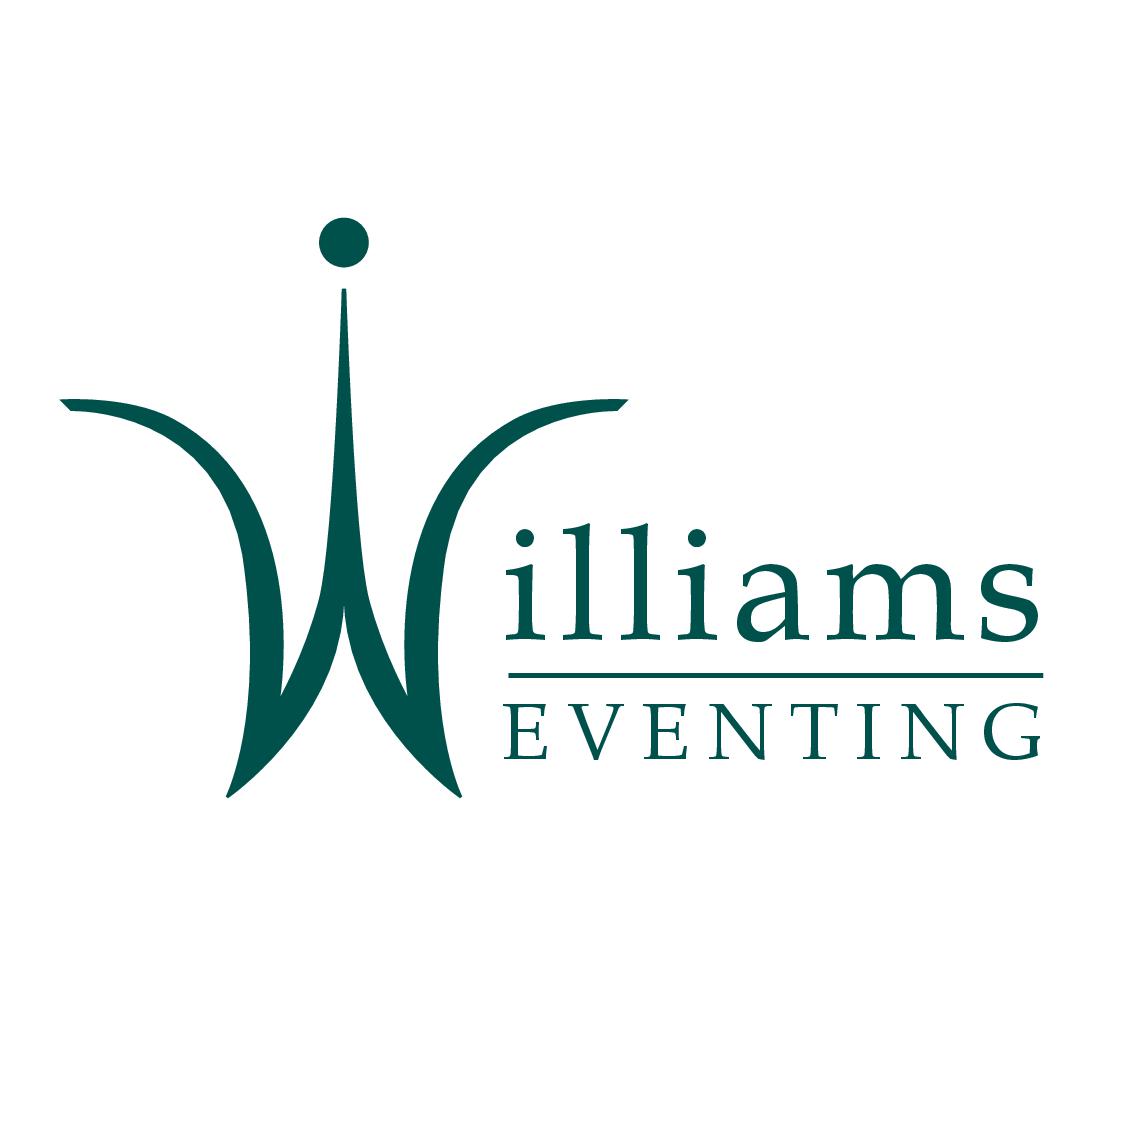 Williams Eventing